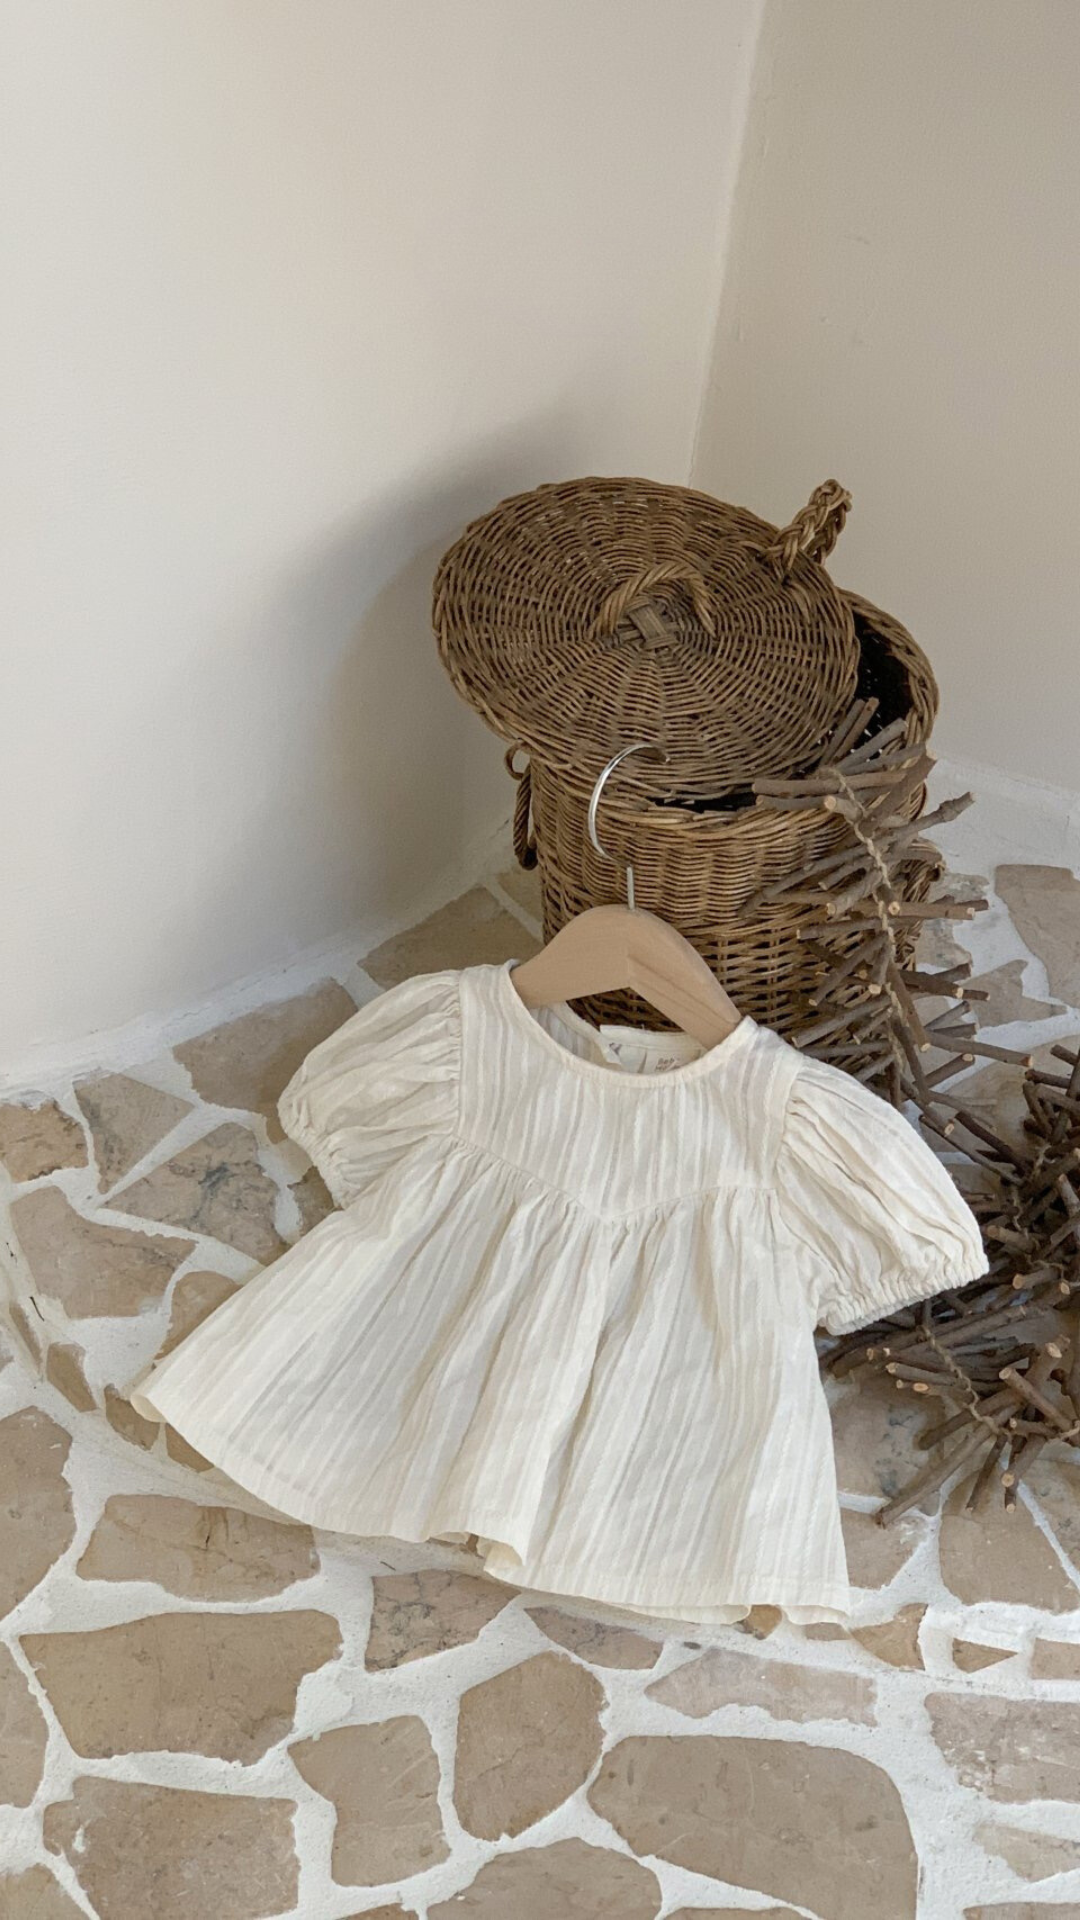 Eine kleine, schlichte weiße Raoul-Bluse von Bebe Holic mit luftiger Ärmelgestaltung liegt auf einem Steinboden neben einem Weidenkorb und einem Zweigbündel, in einem sanft beleuchteten Raum mit weißen Wänden.